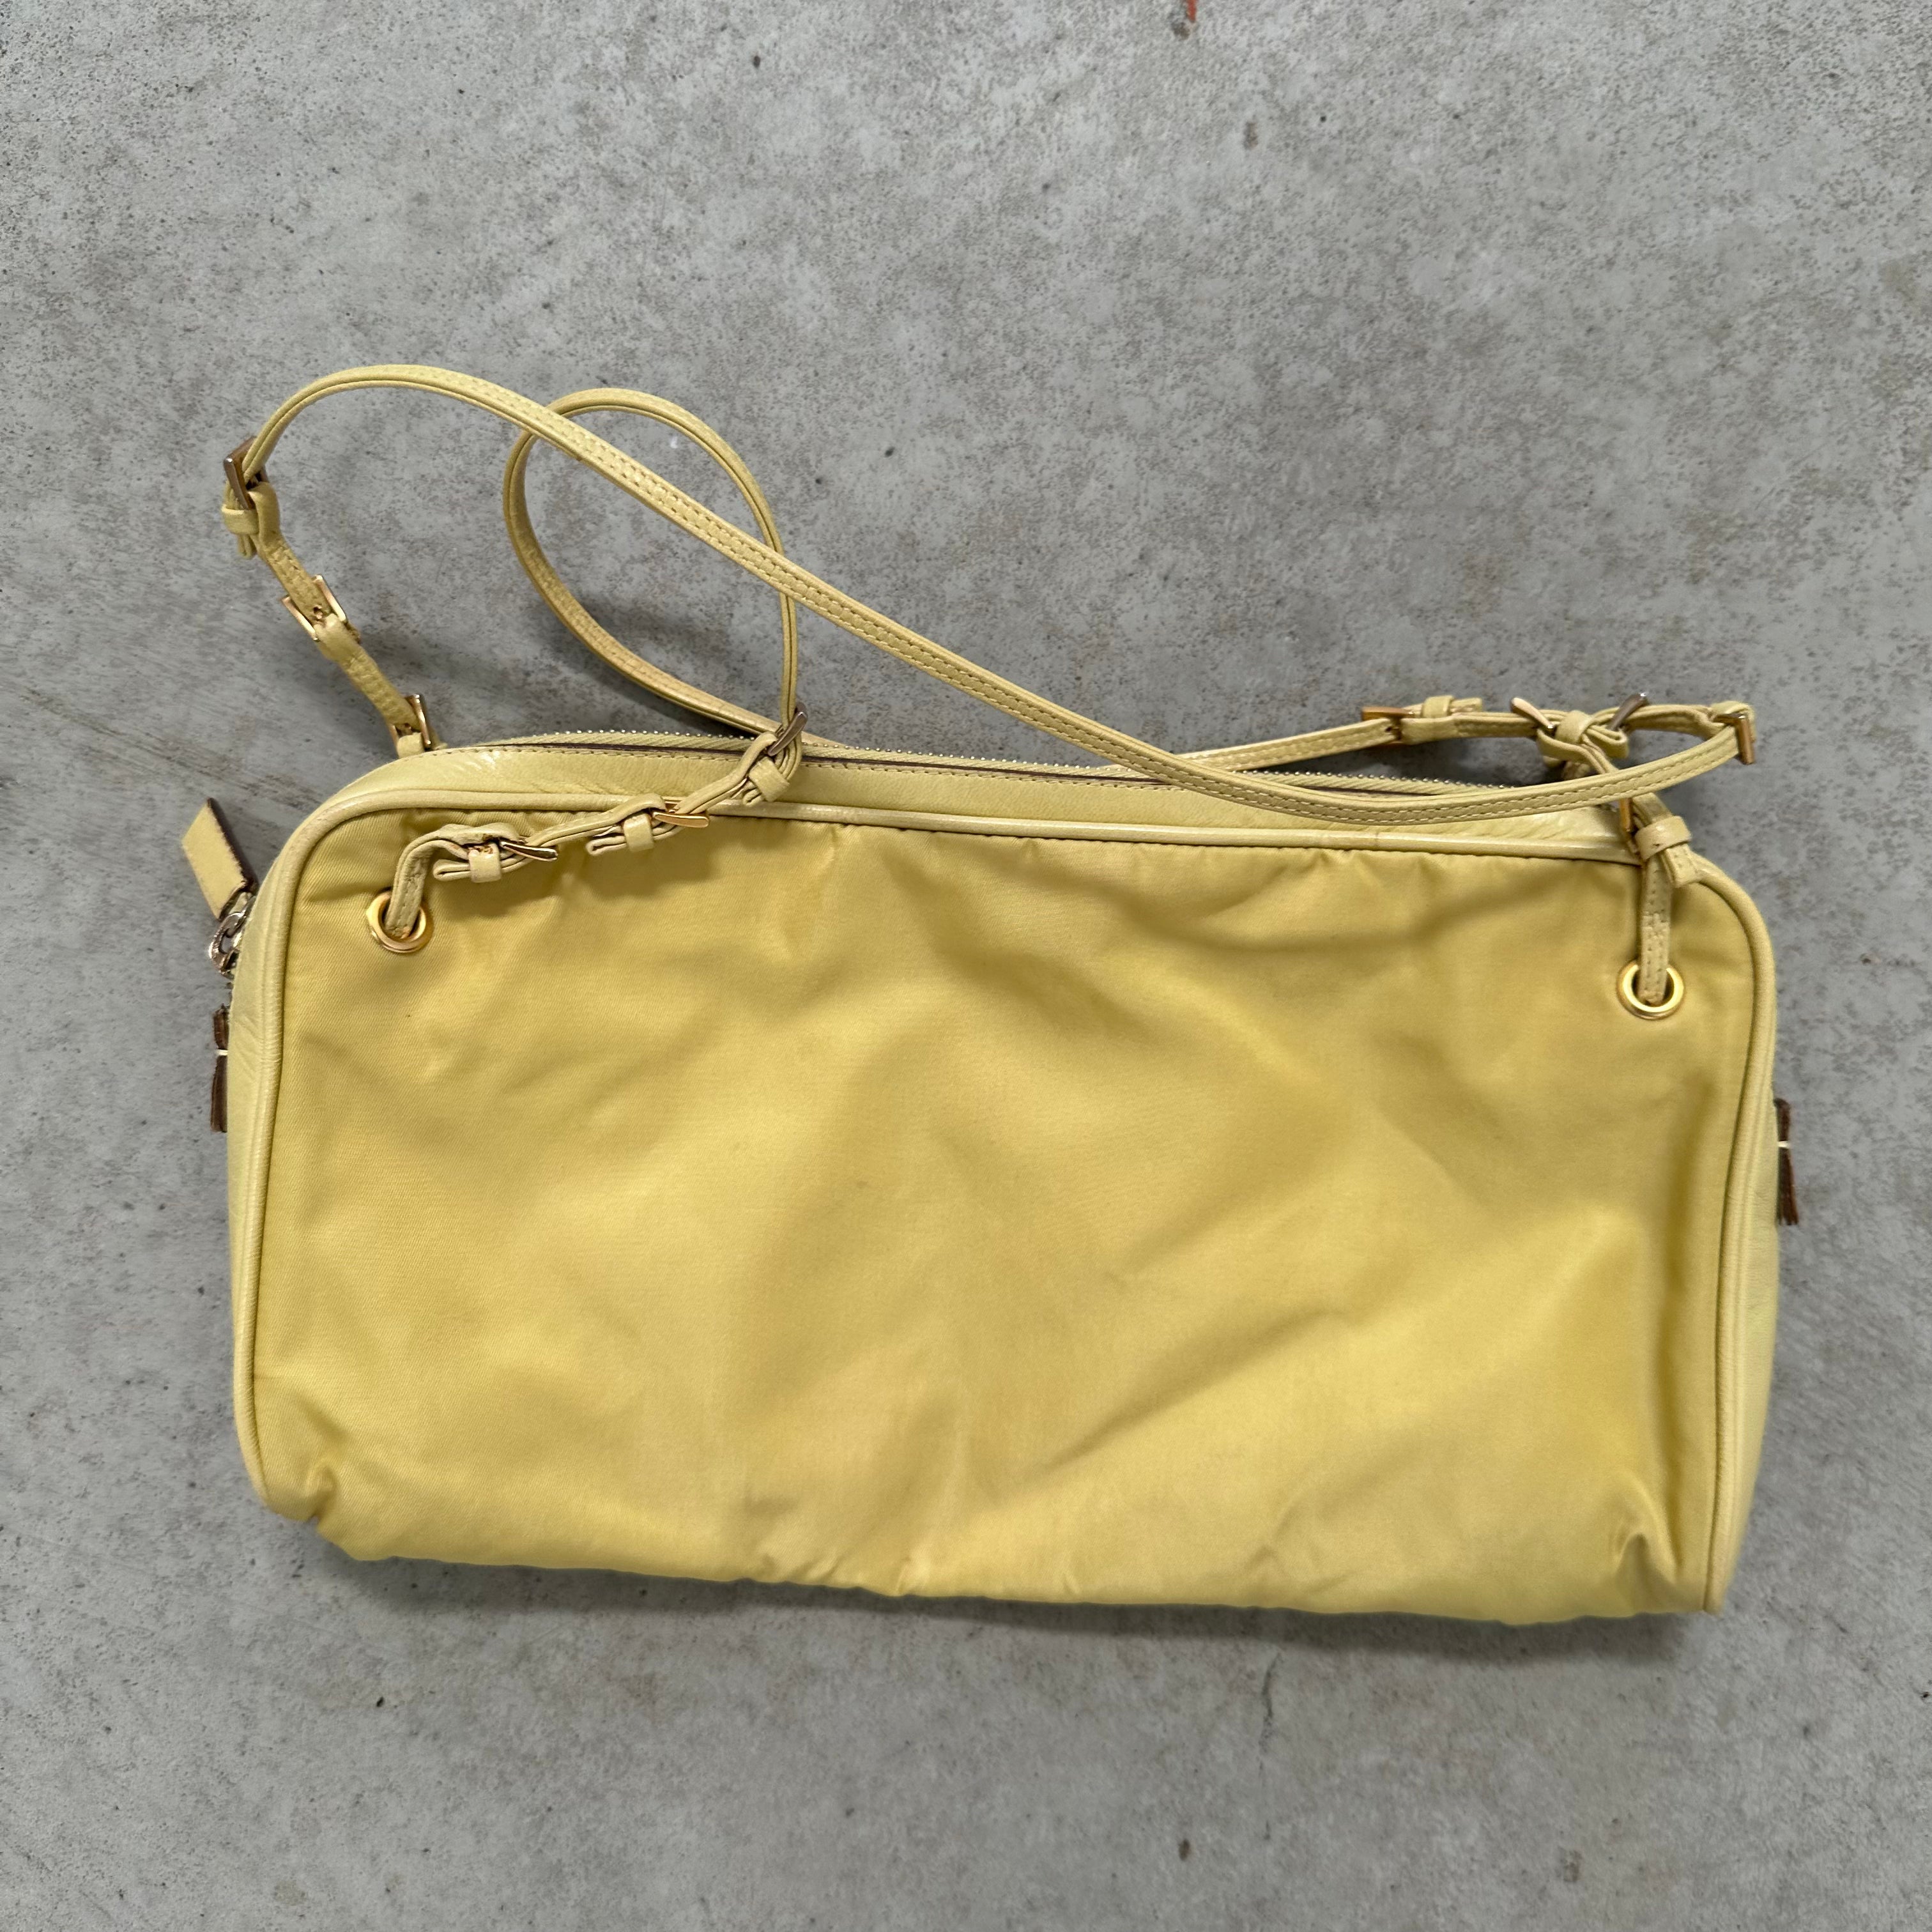 Prada Leather Strap Bag Nylon Yellow